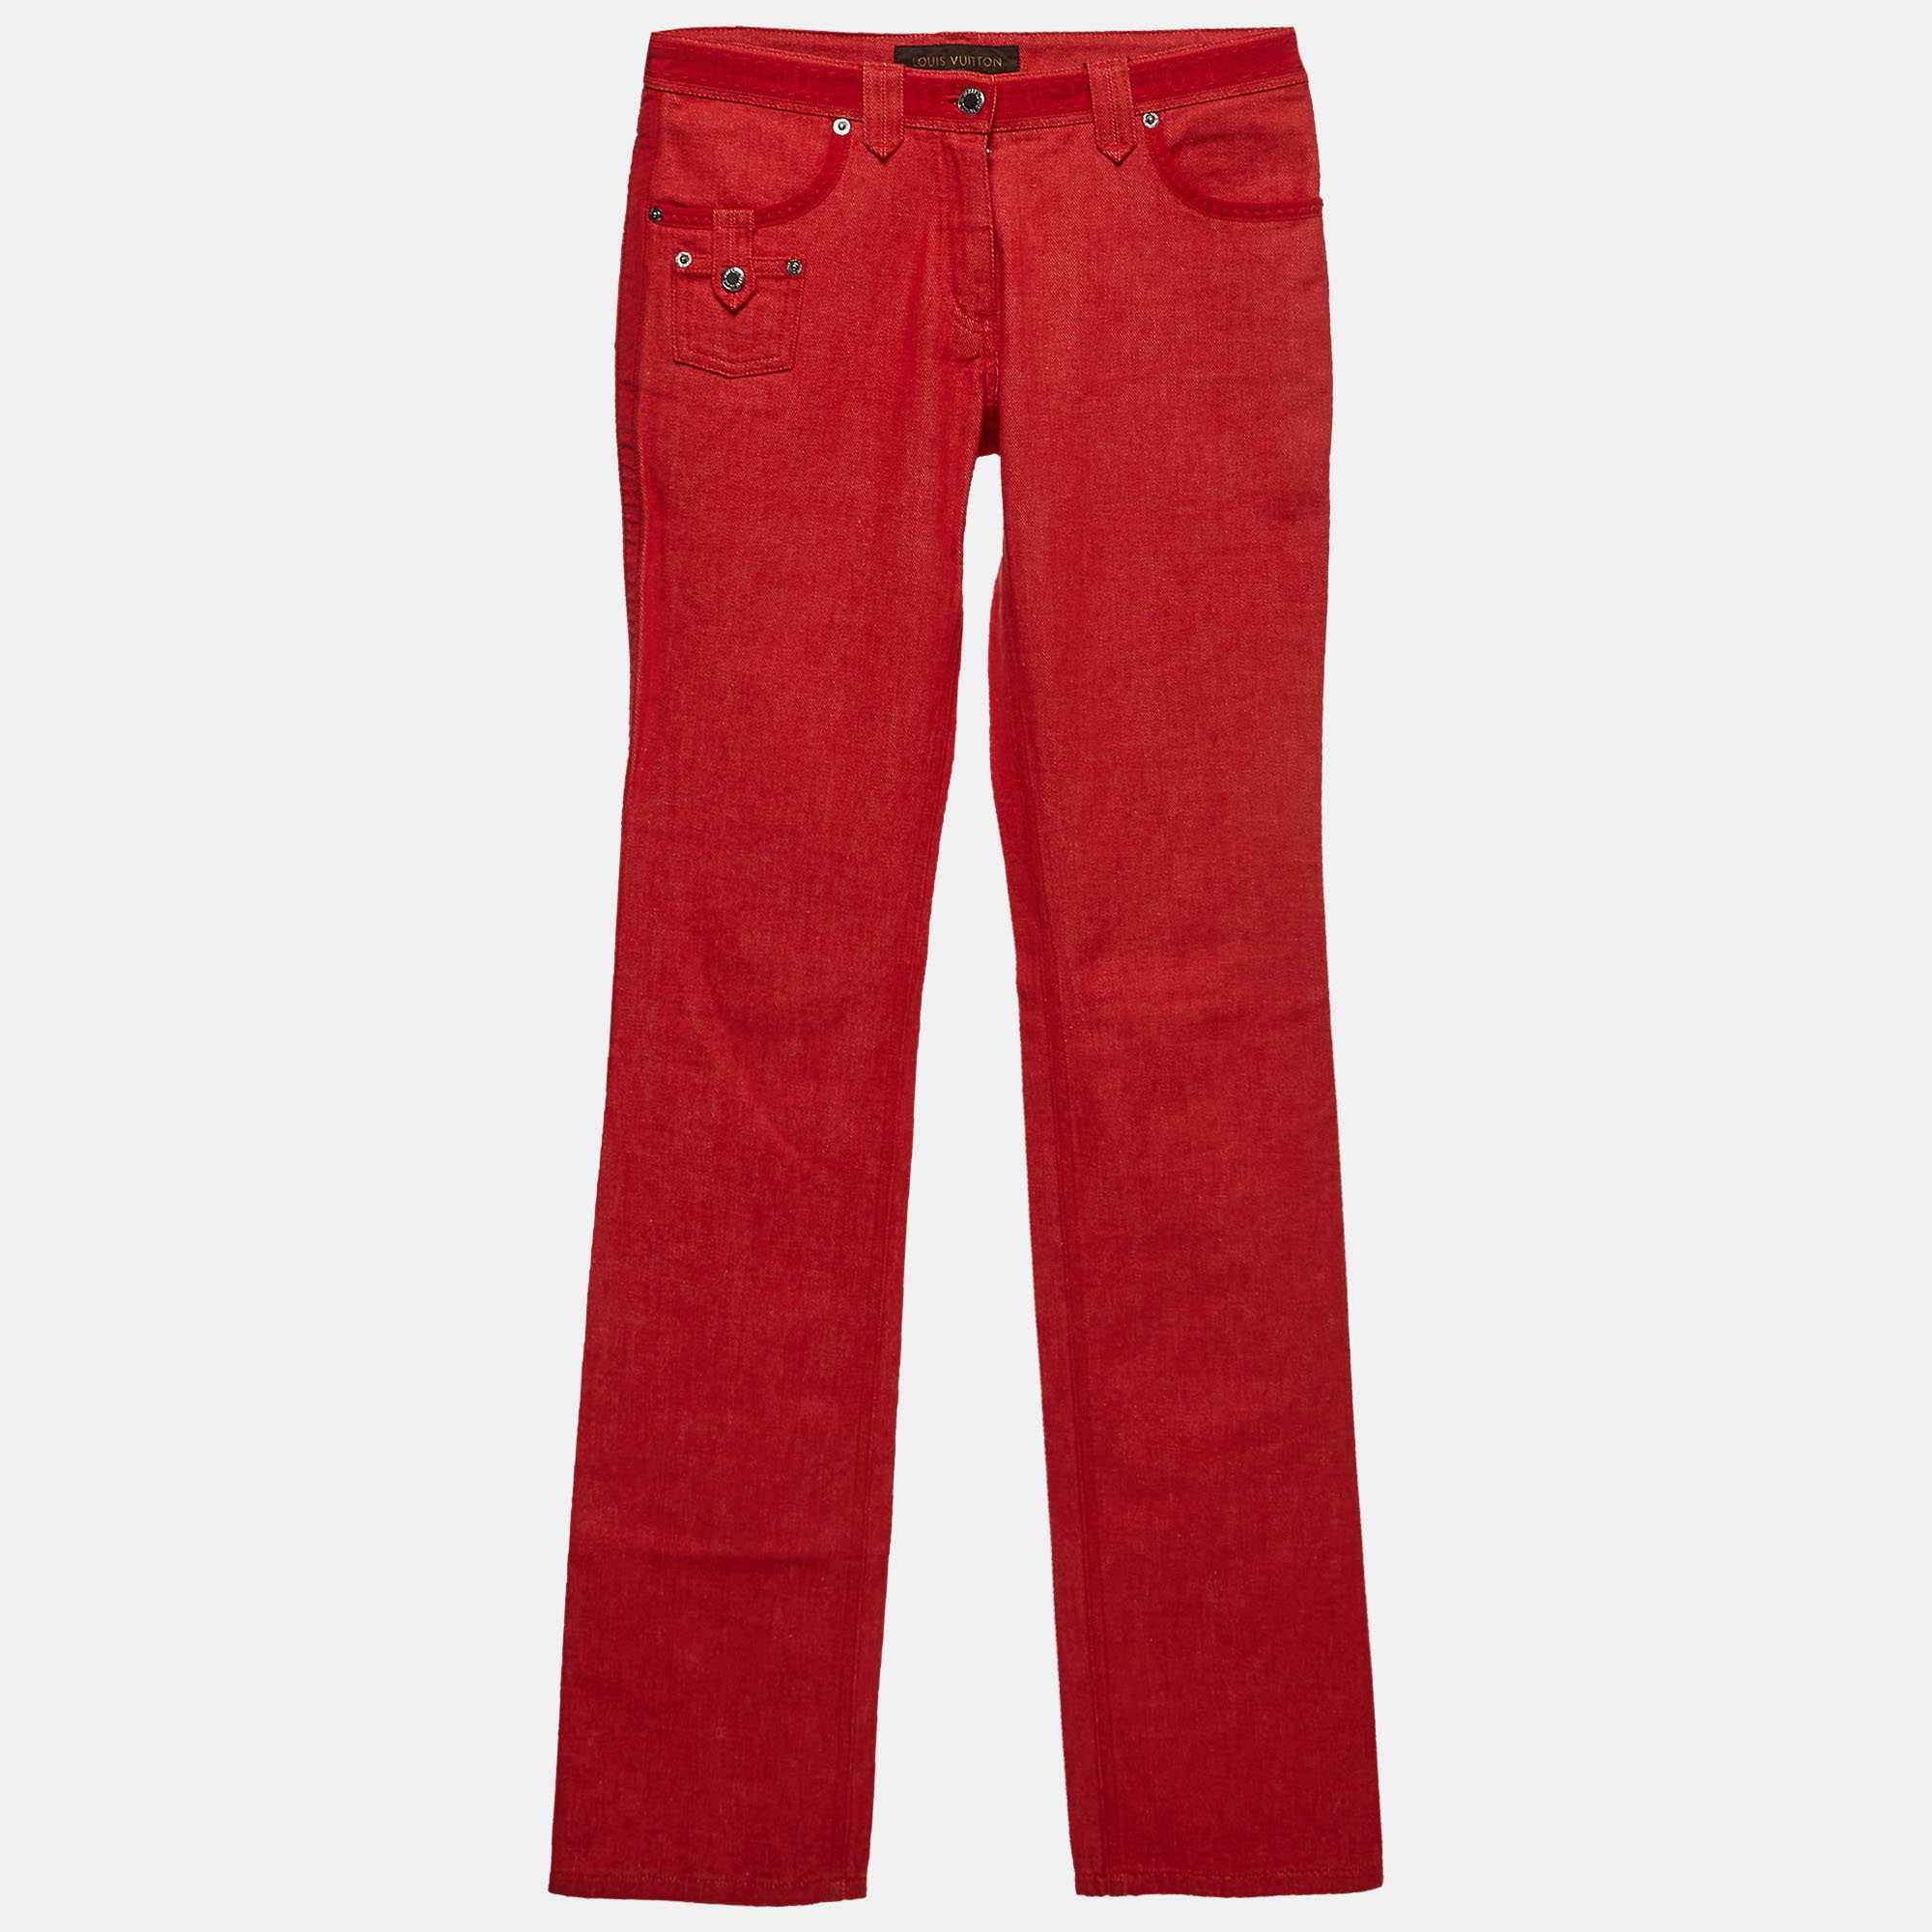 Louis Vuitton Red Denim Jeans S Waist 30